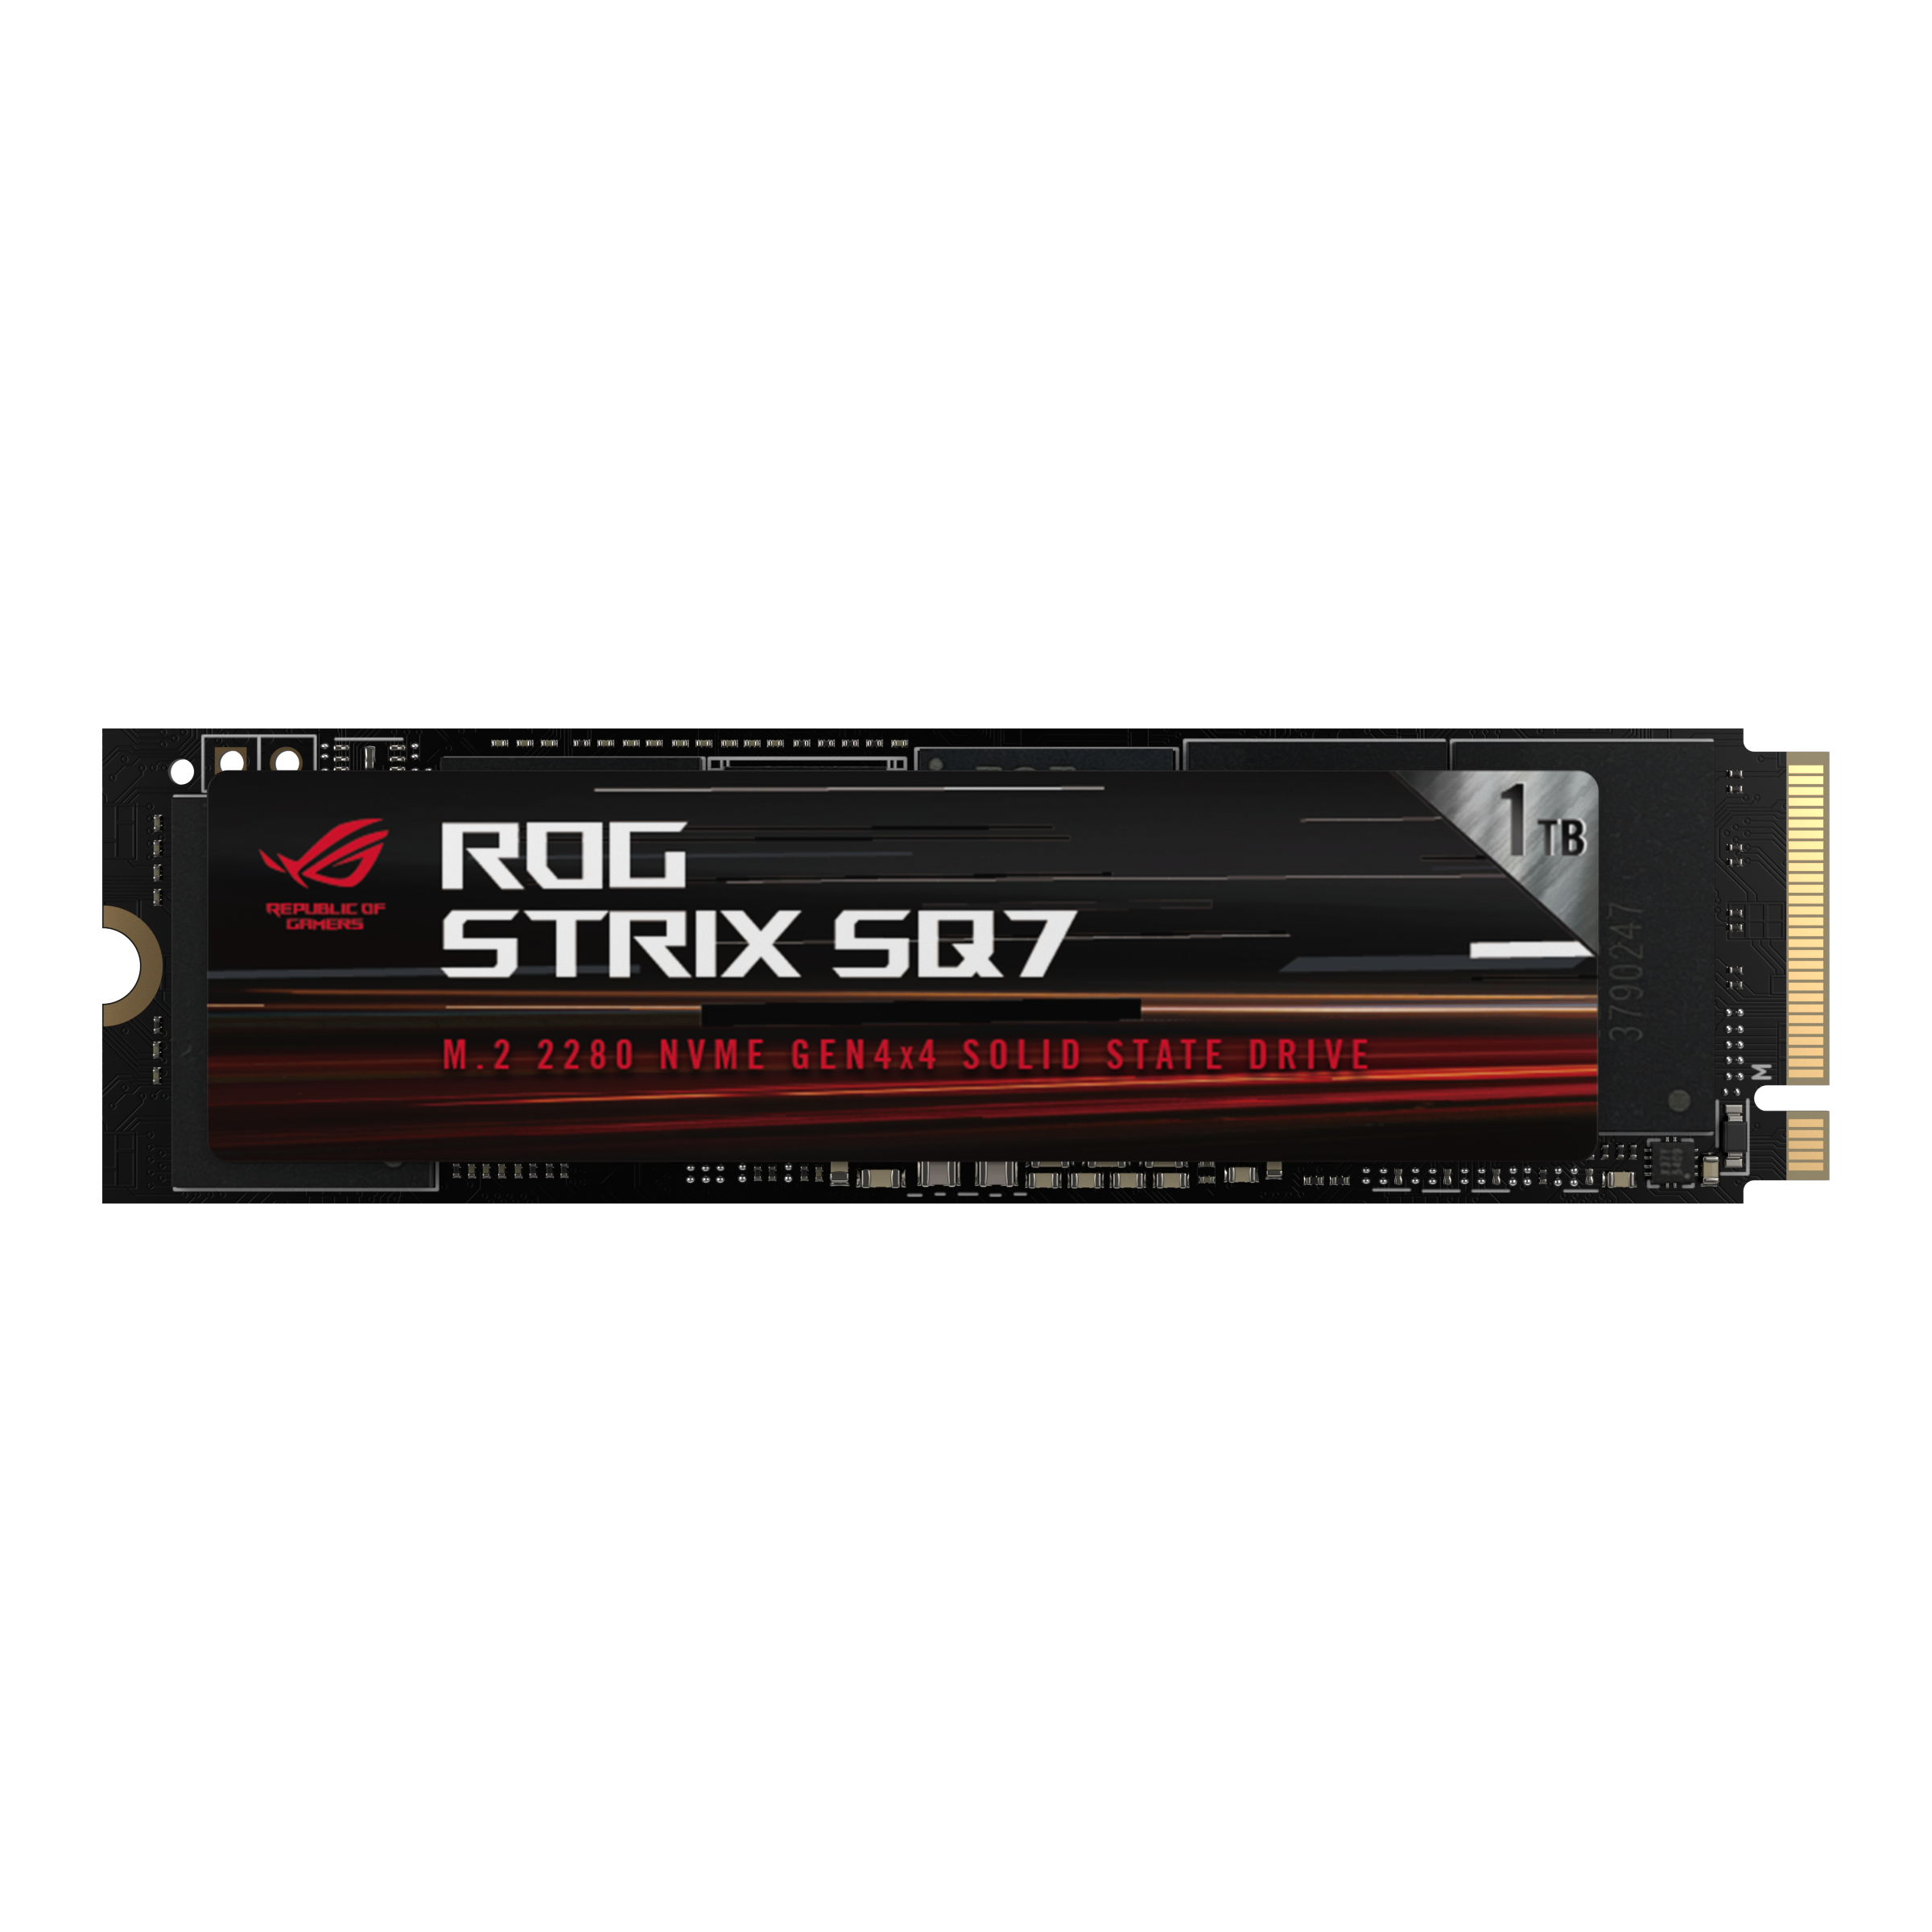 SSD ASUS ROG Strix SQ7, 1TB, NVMe, PCIe Gen4